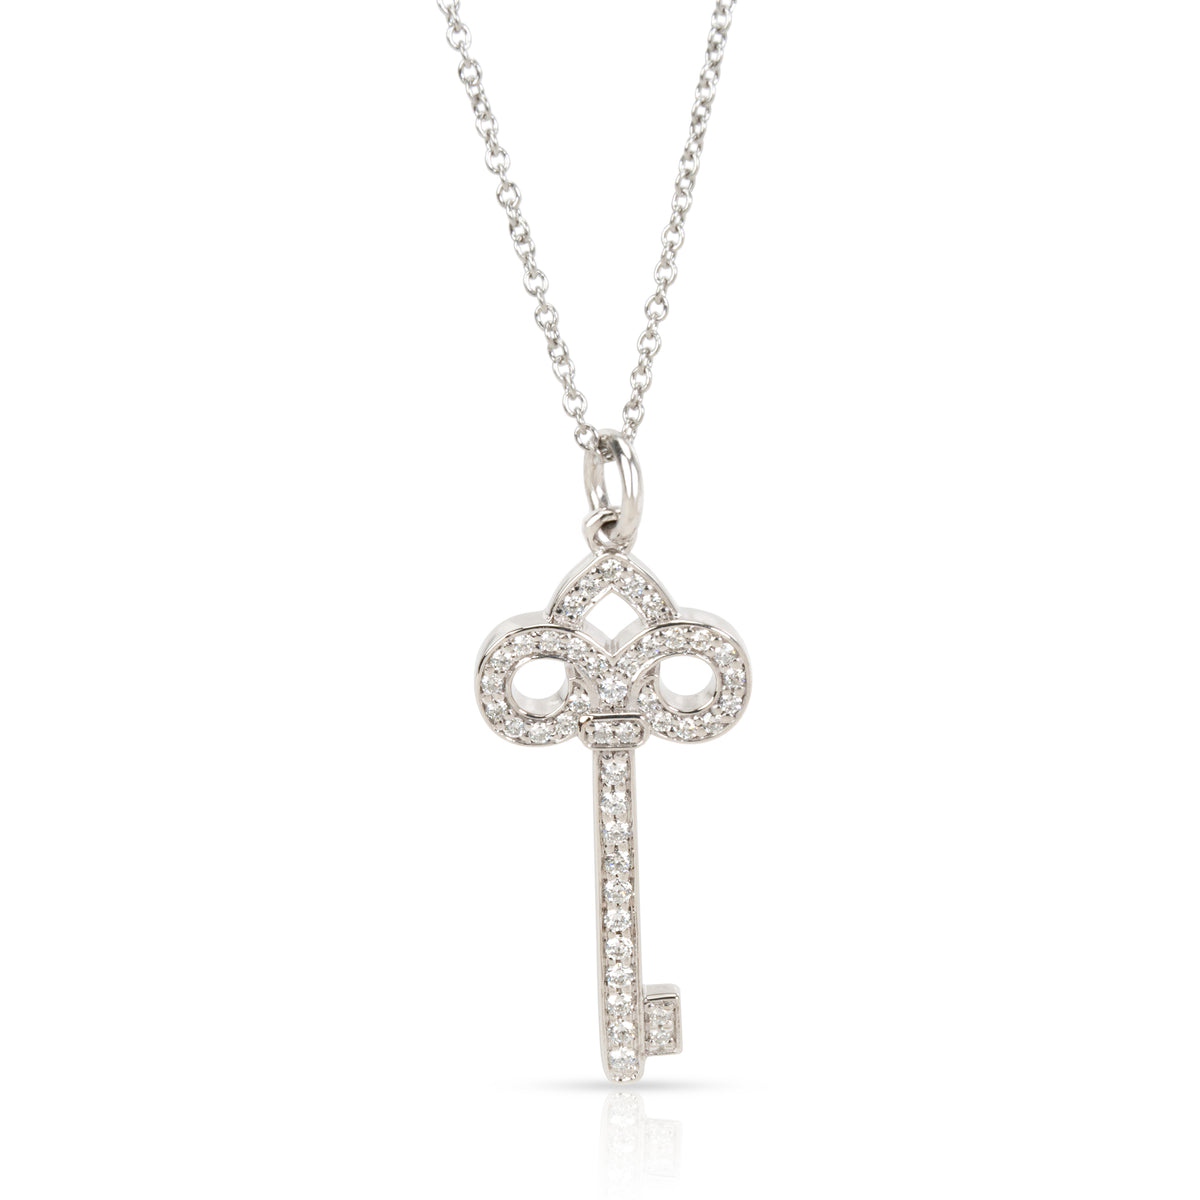 Tiffany & Co. Fleur De Lis Diamond Key Pendant Necklace in Platinum 0.12 ctw